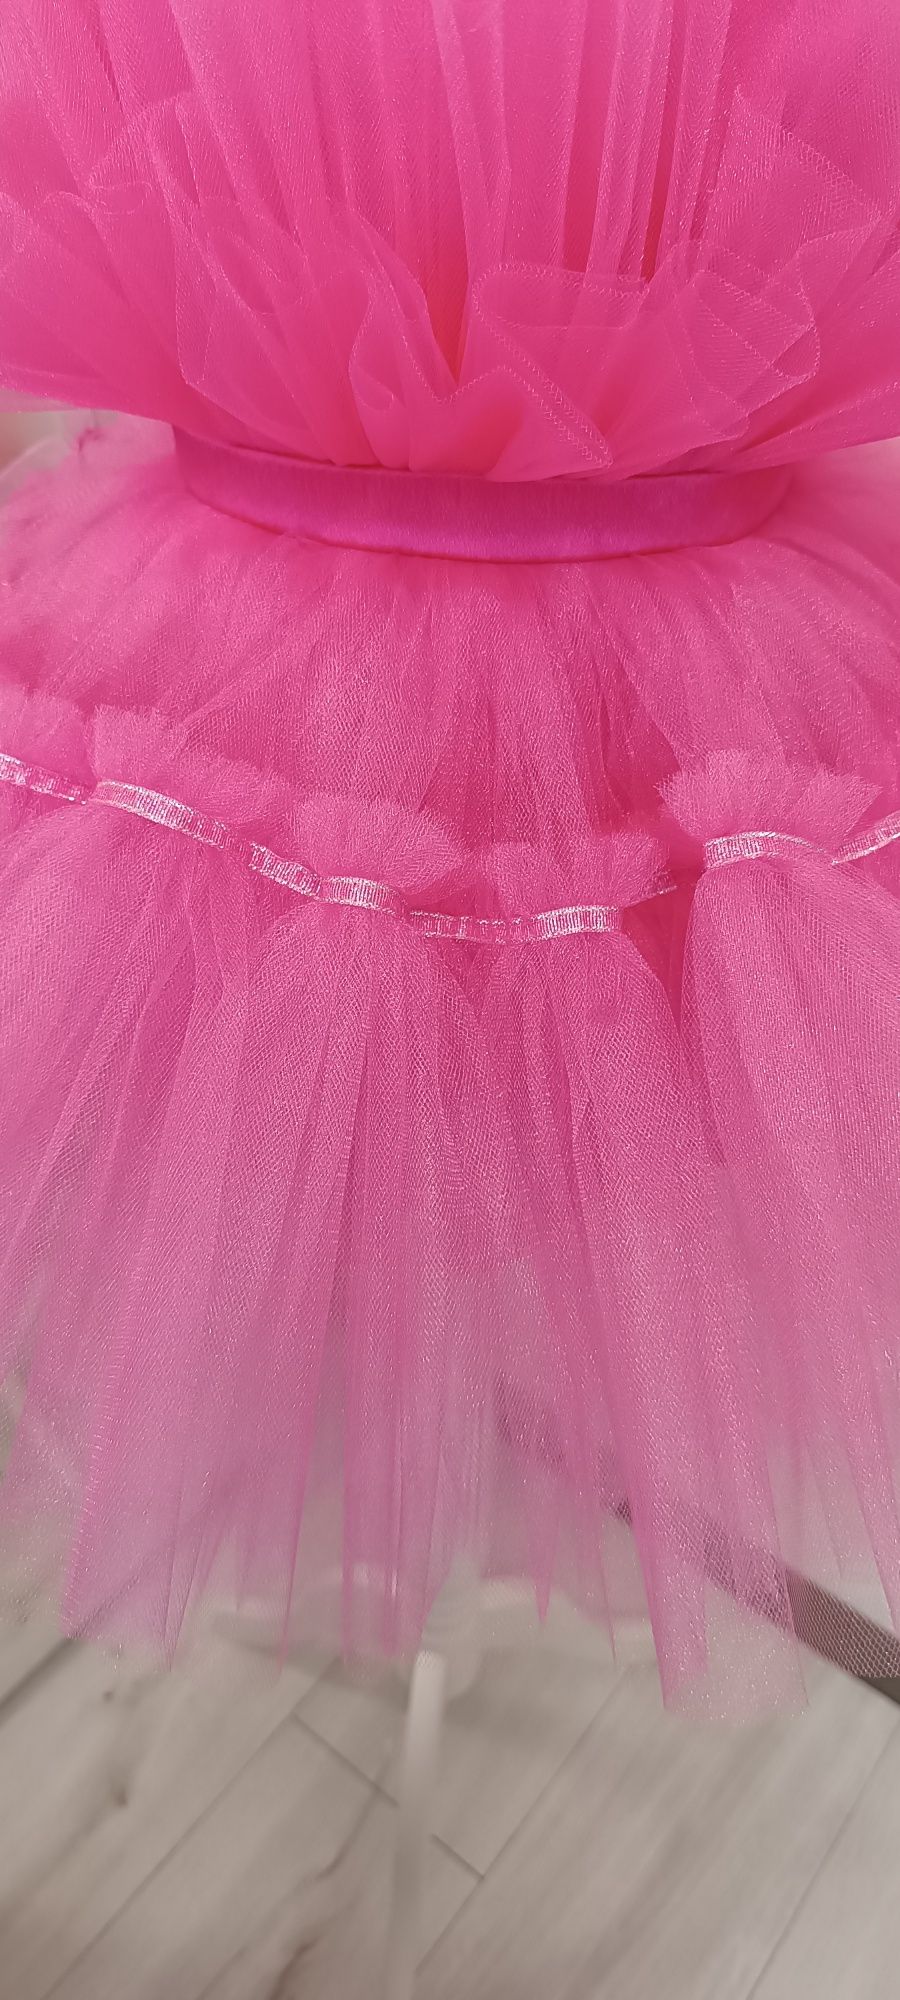 Рожева сукня для дівчинки.Барбі.Дитяче плаття.Платье для девочки